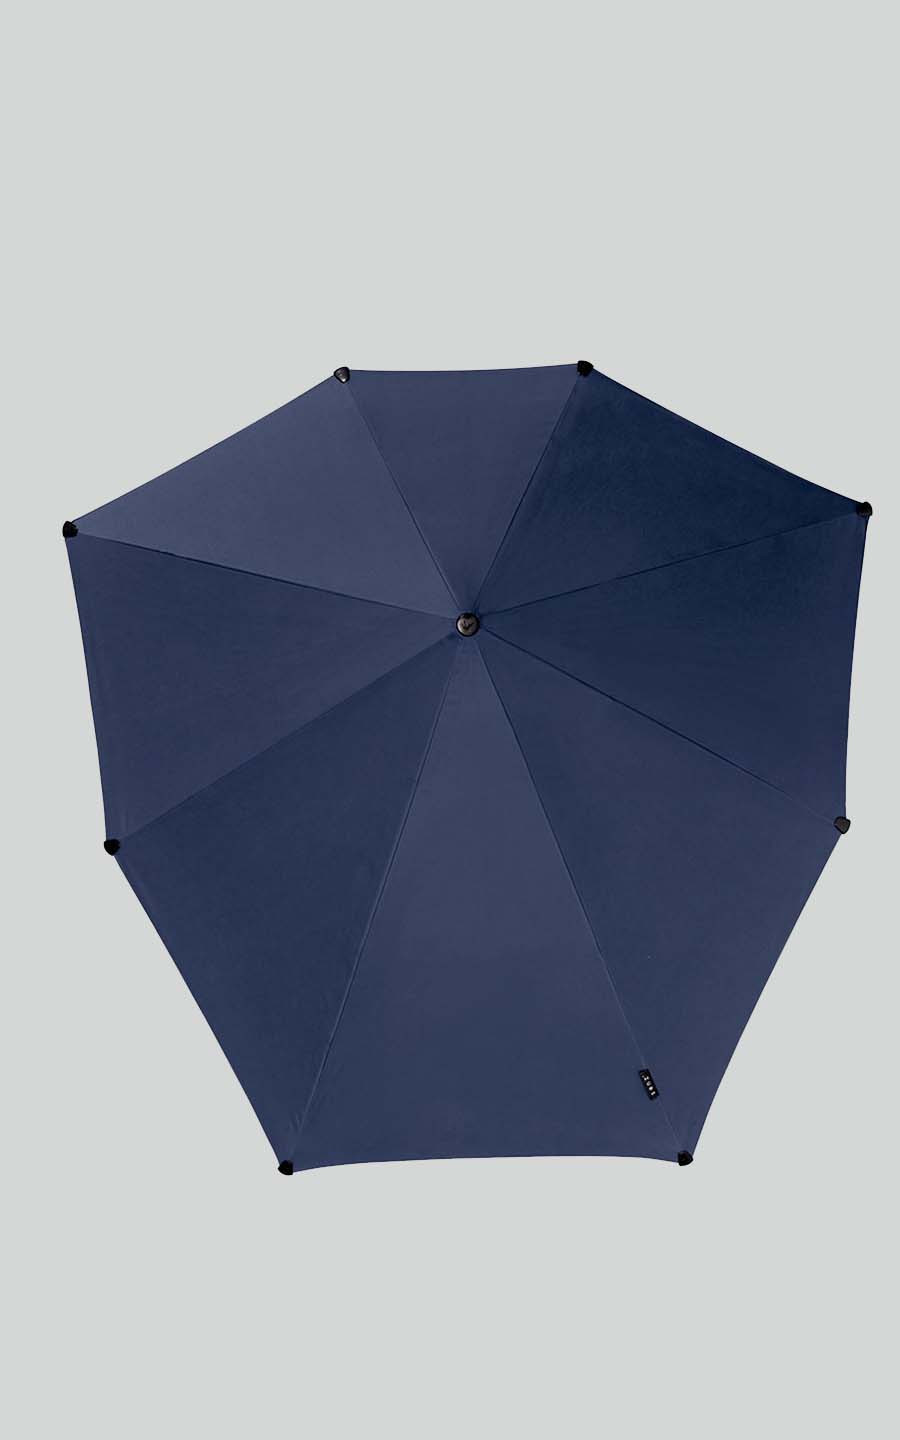 Blauw Paraplu s image